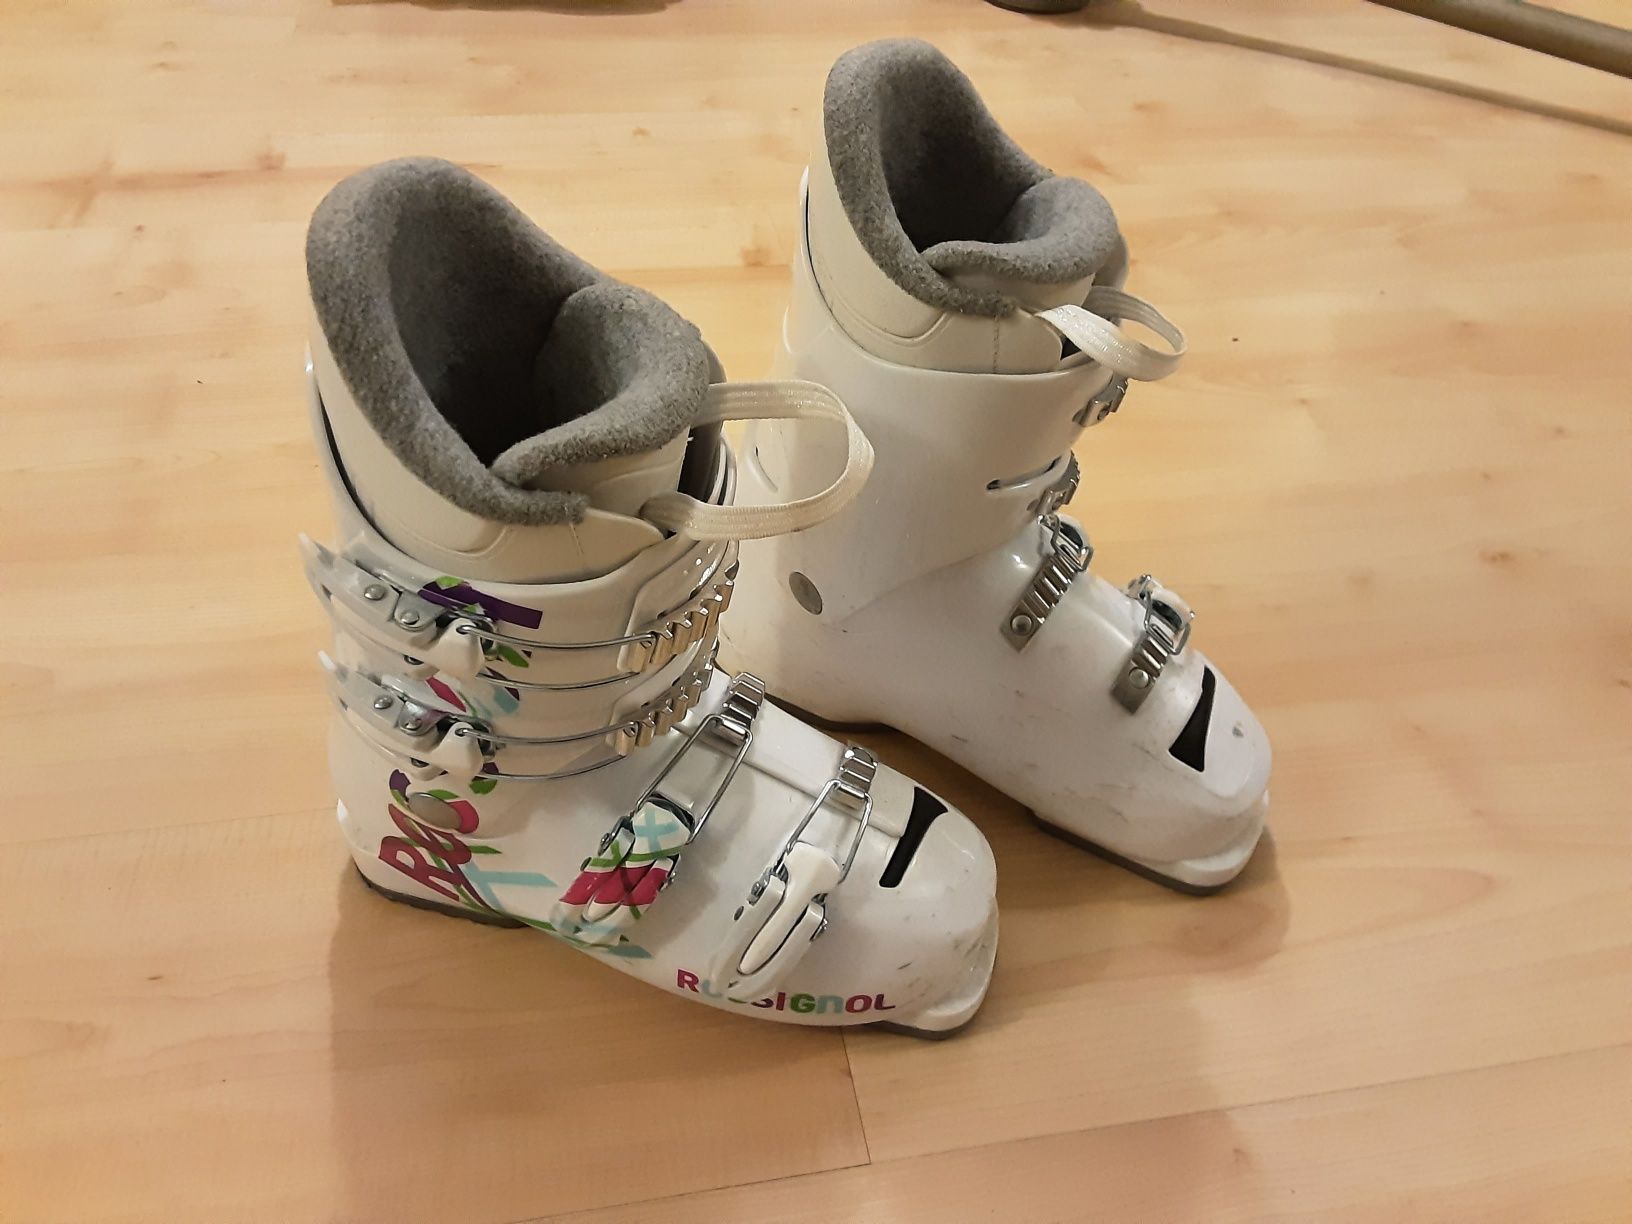 Białe buty narciarskie Rossignol